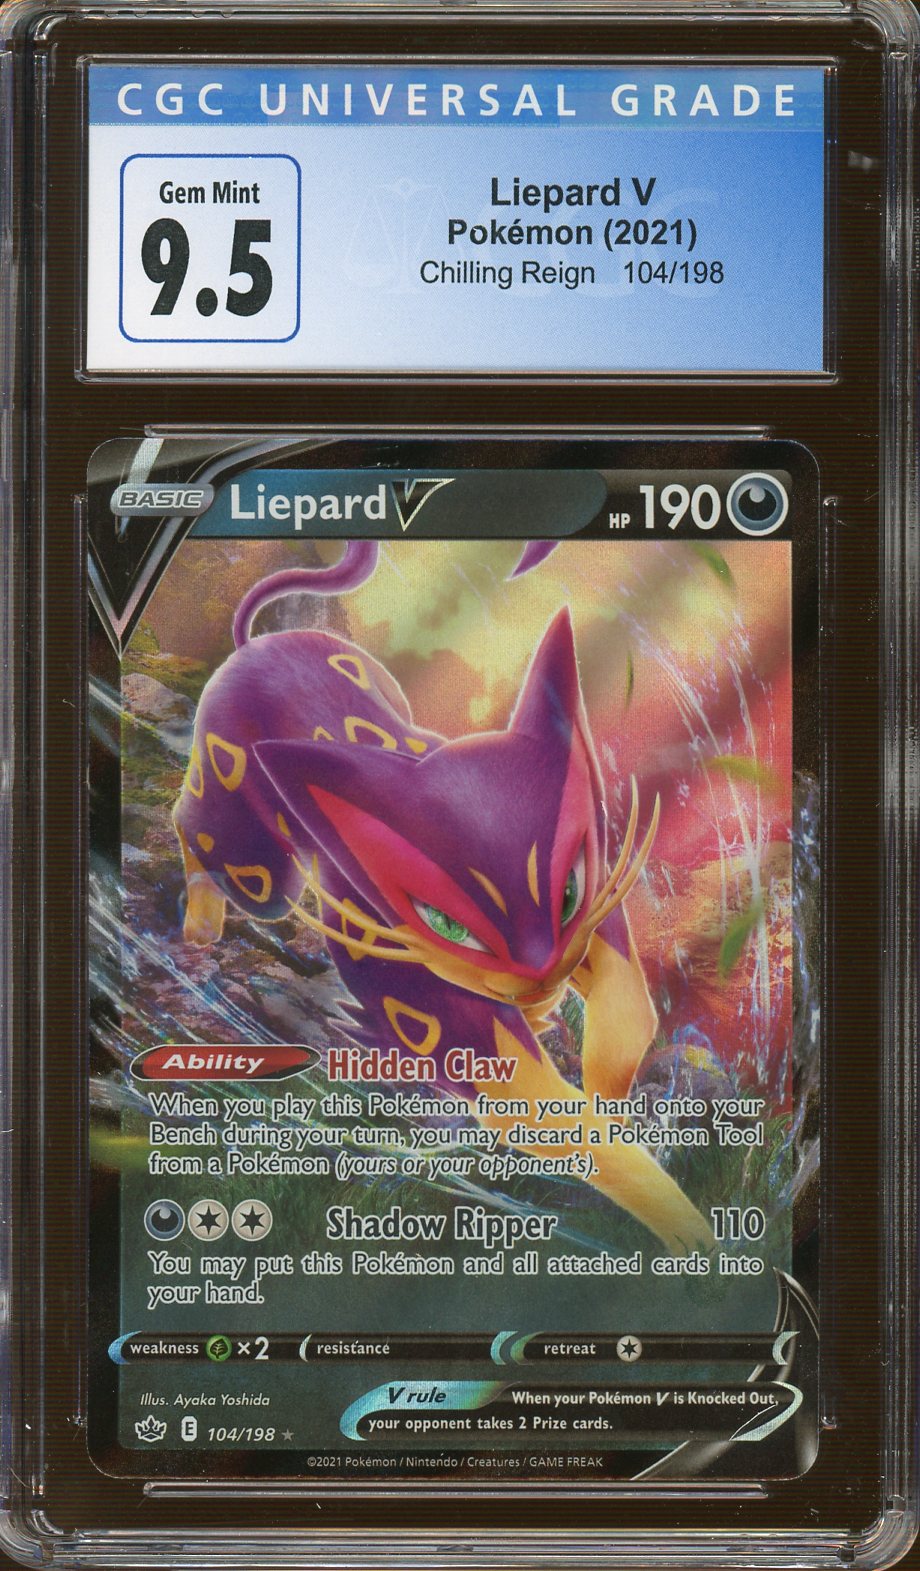 Liepard V, Pokémon